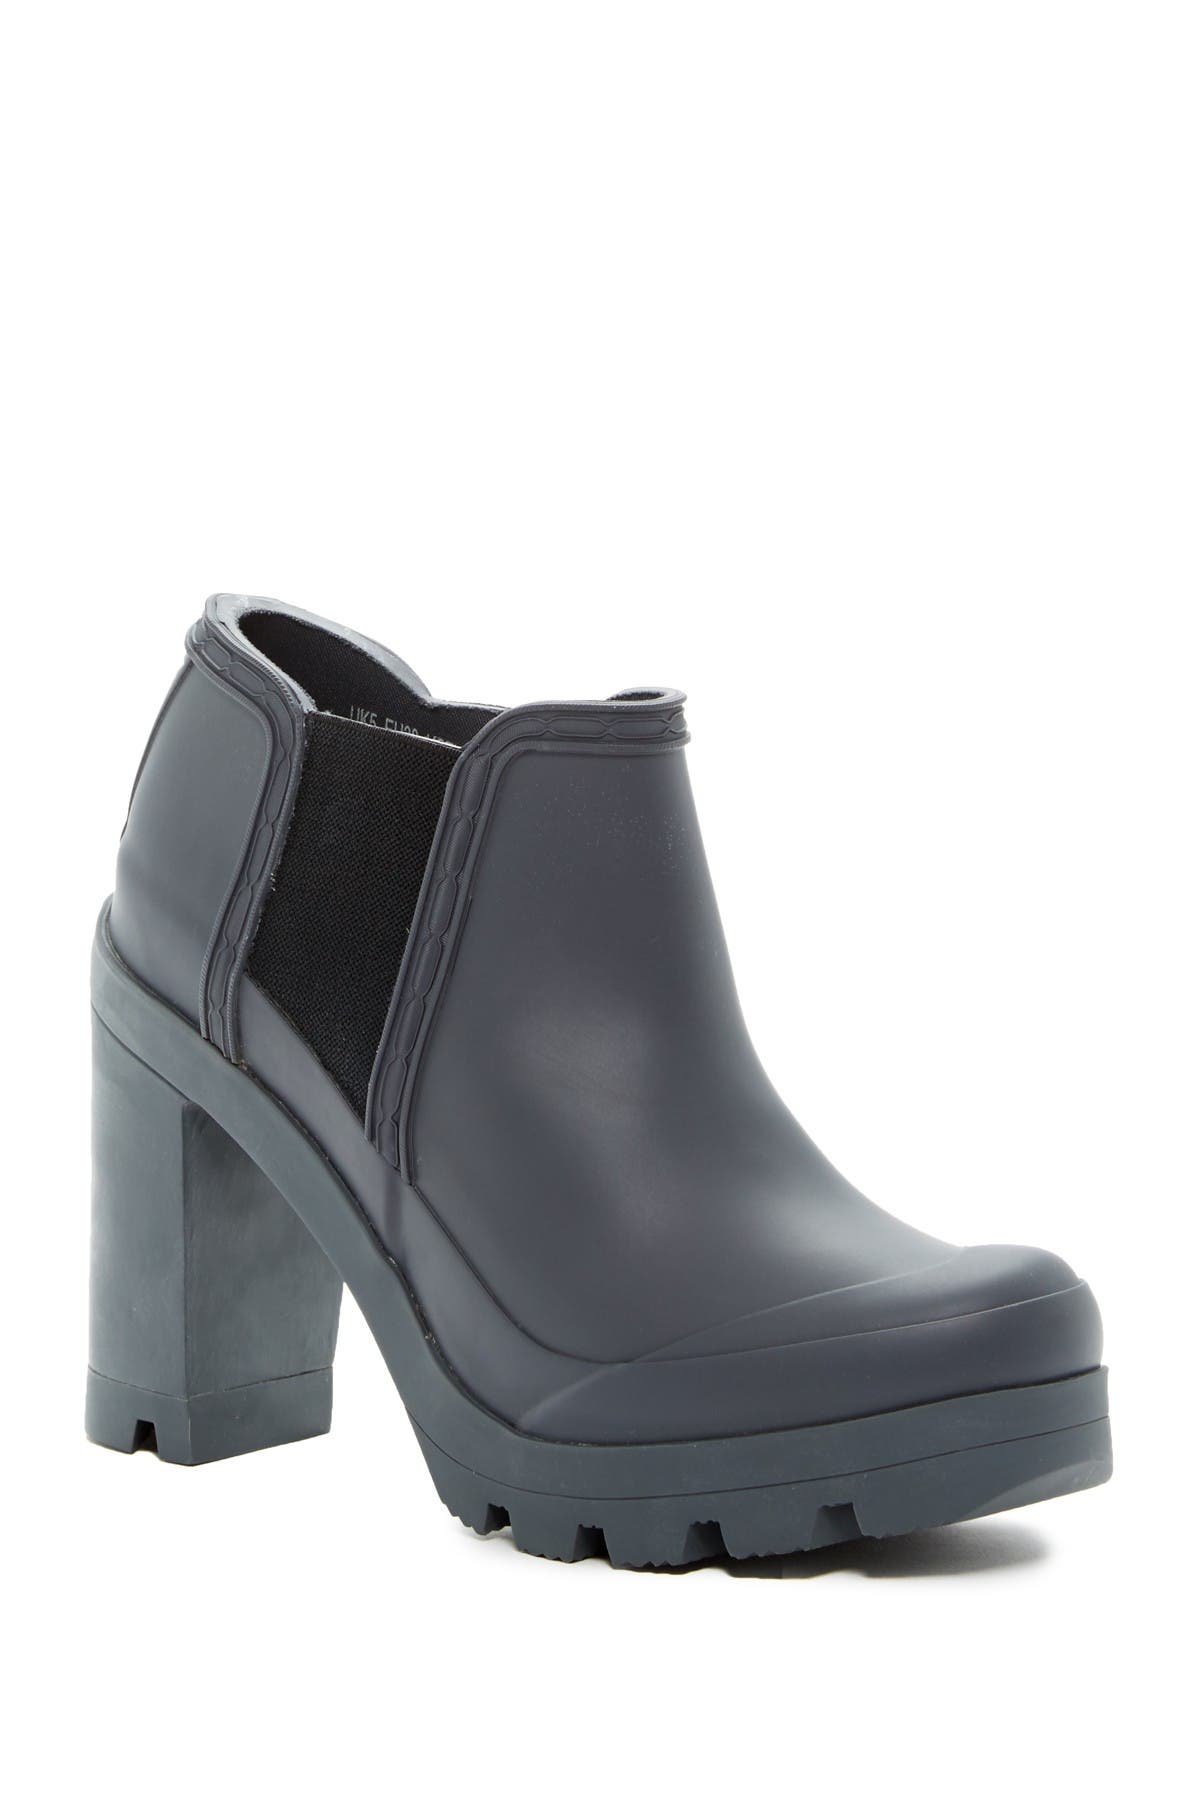 high heel waterproof boots